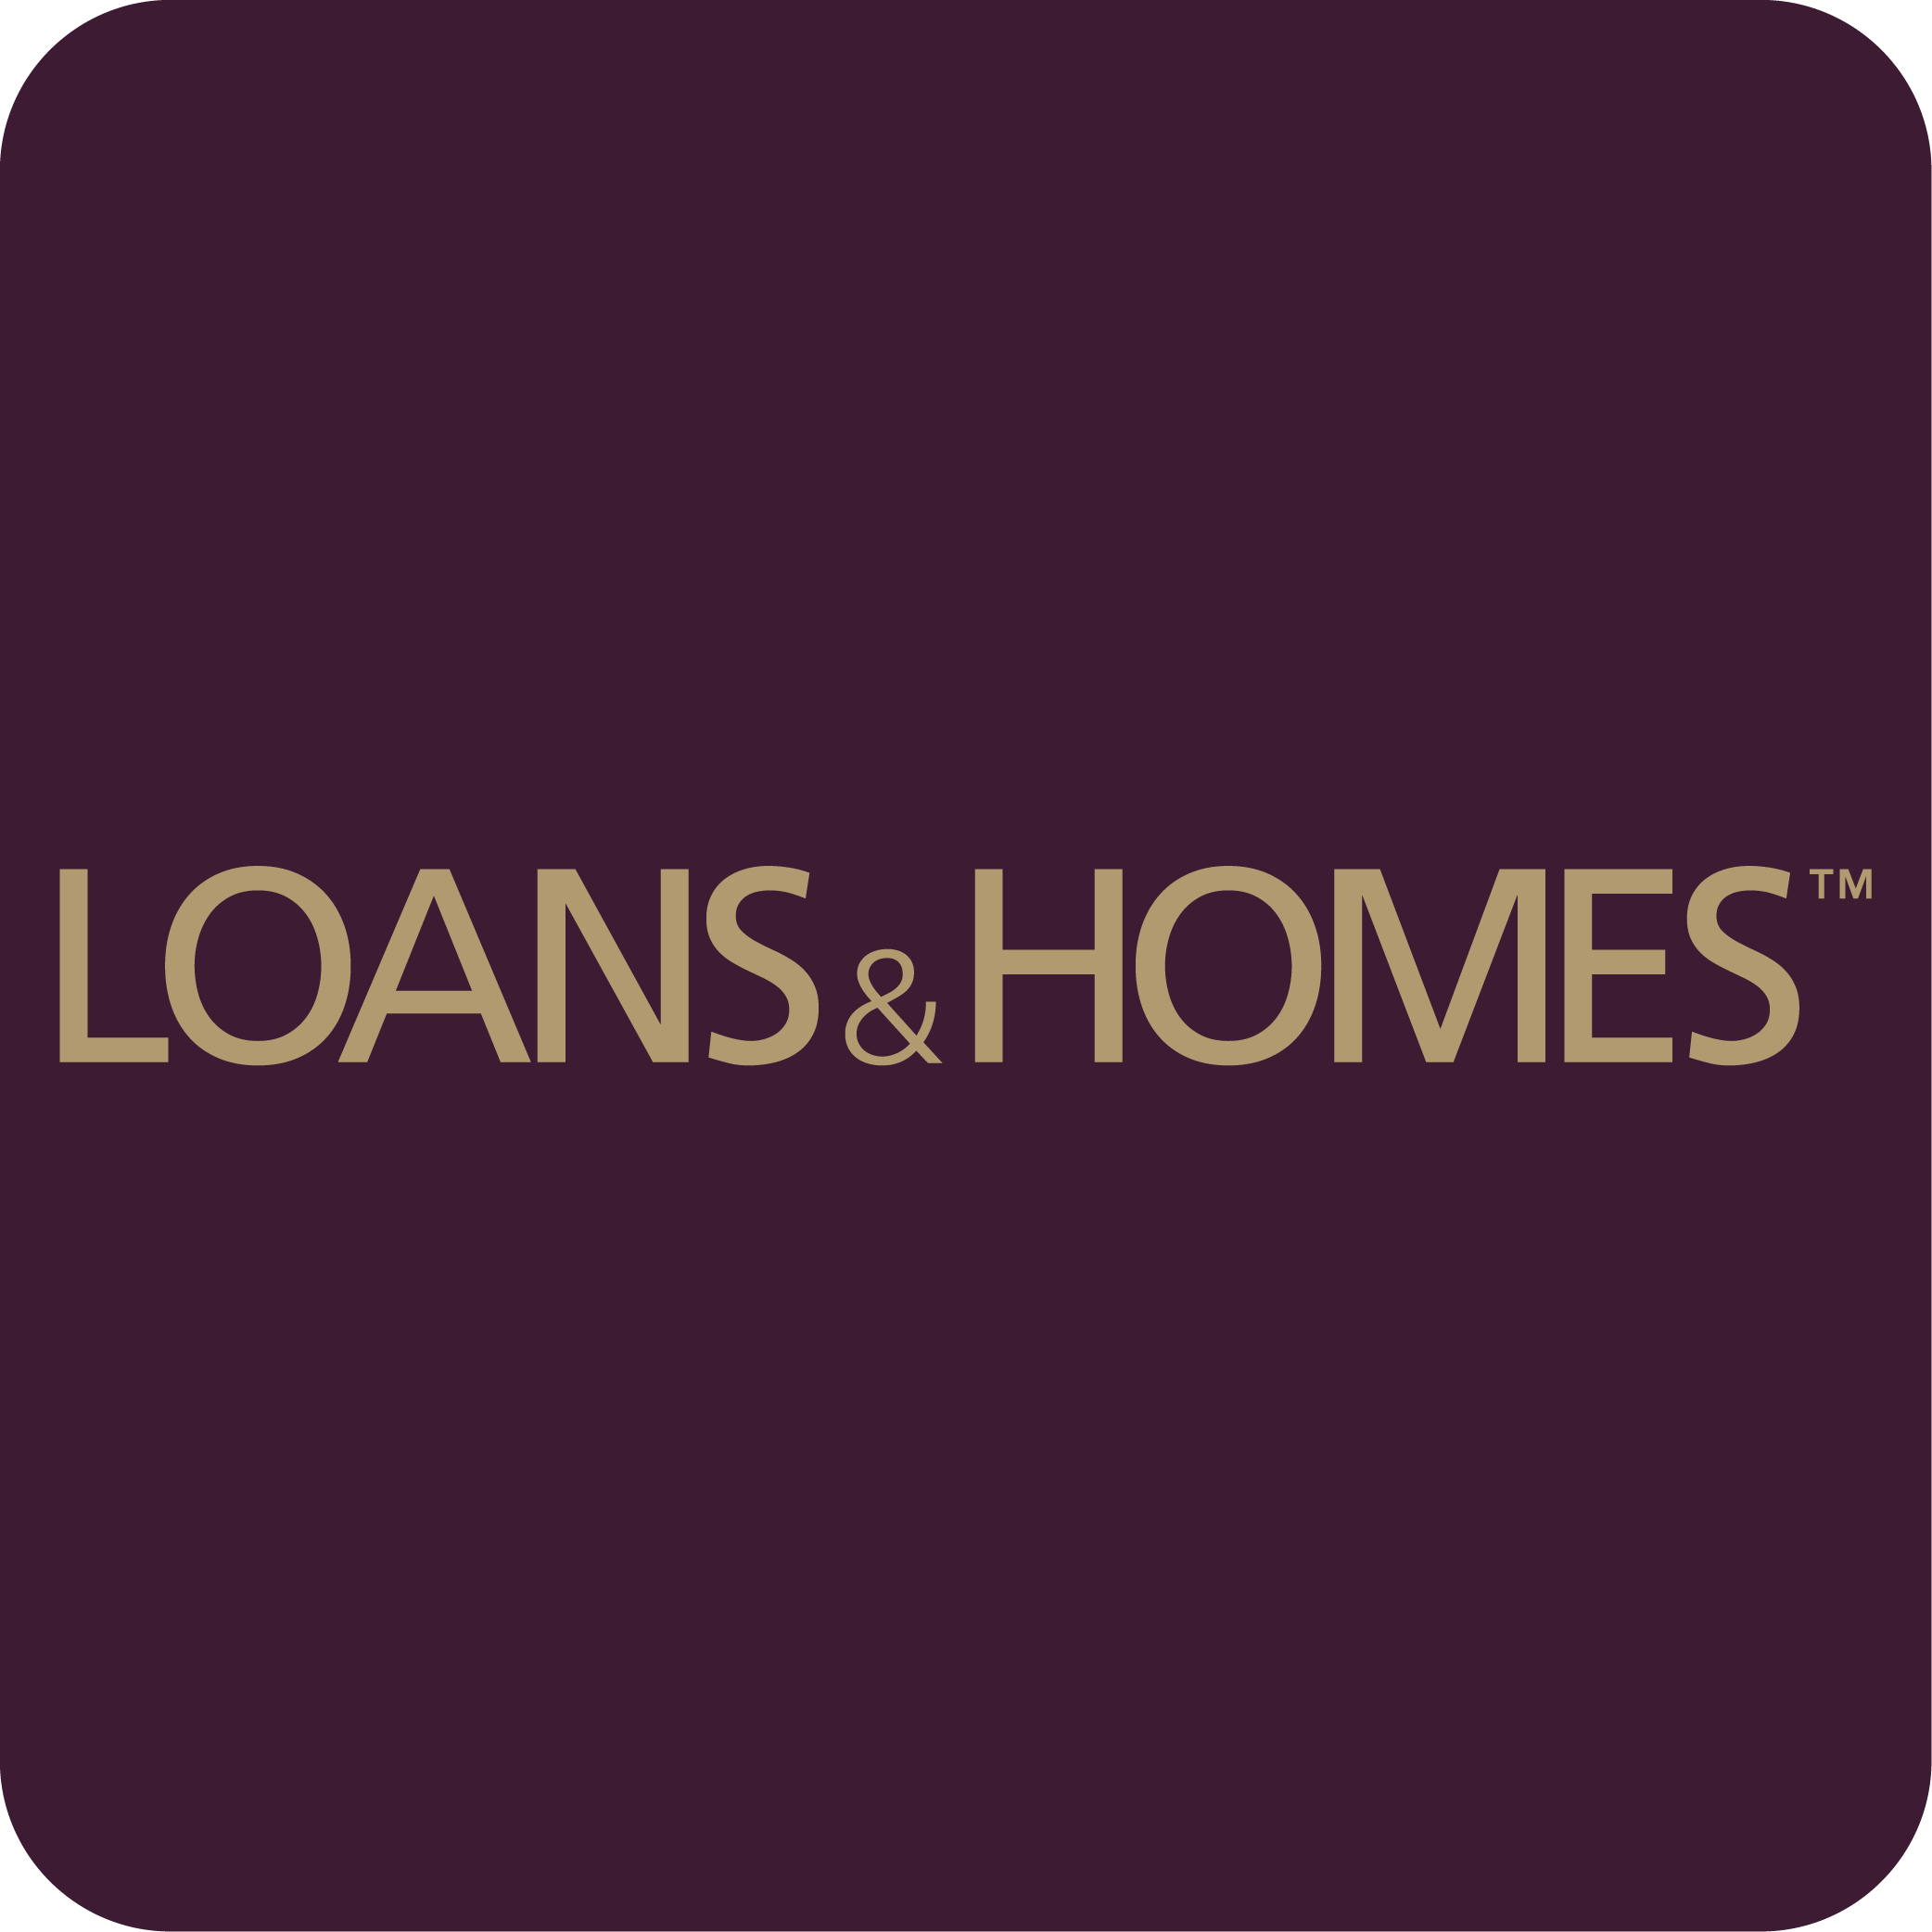 Loans & Homes